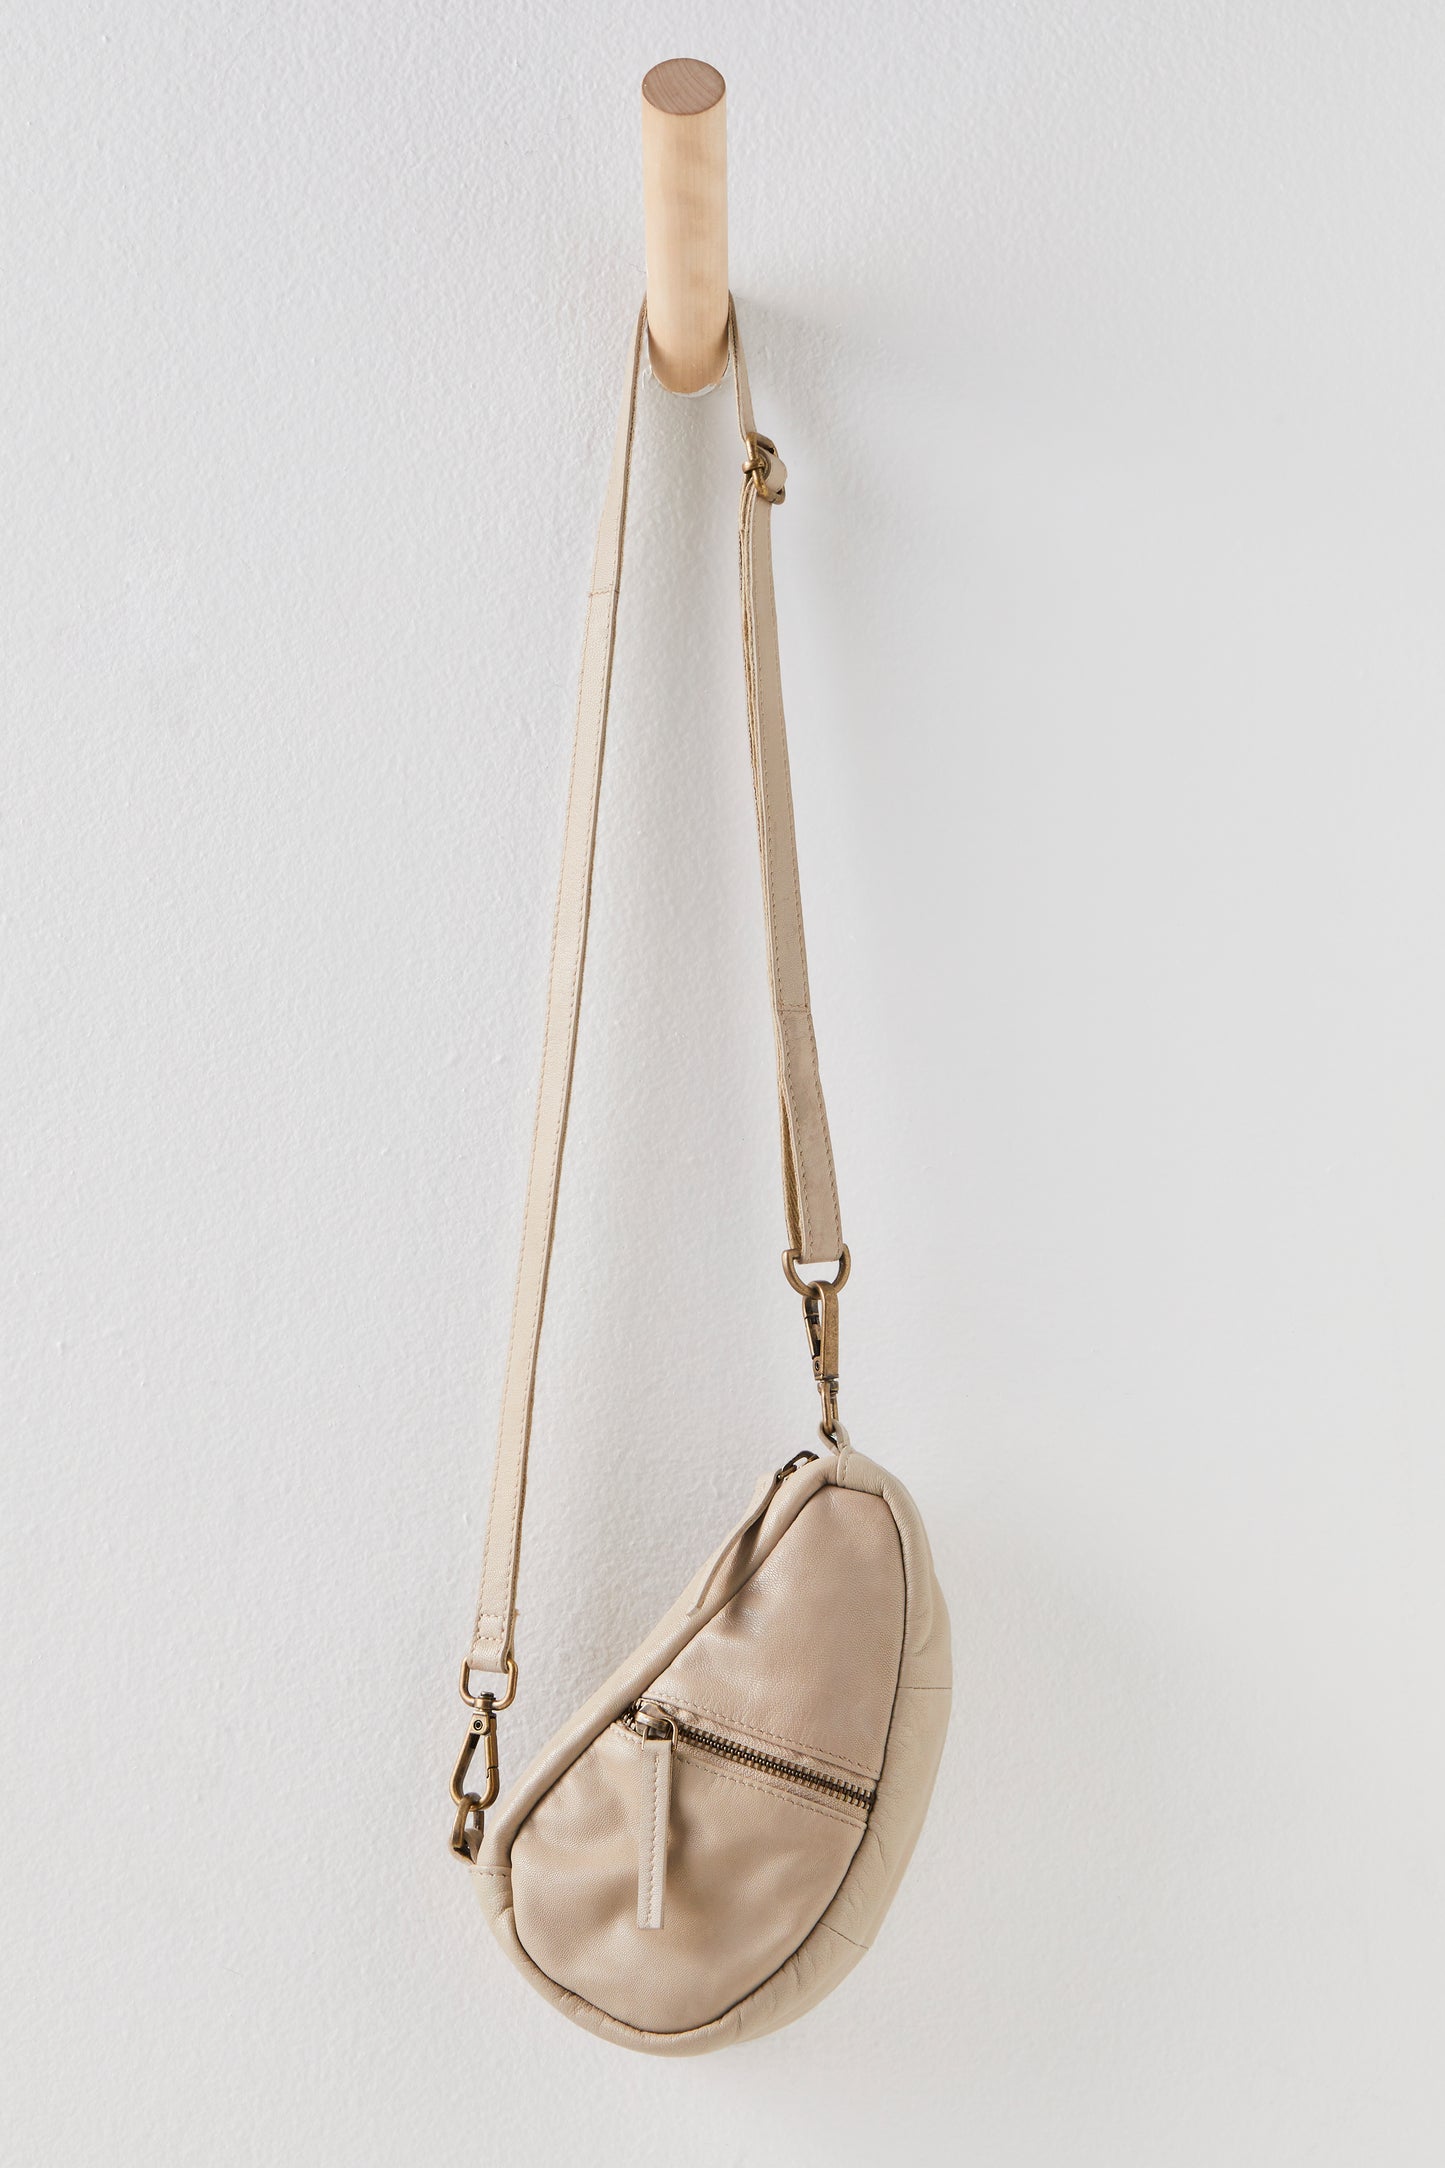 Handbags, Purses + Bucket Bags | Macrame bag, Macrame purse, Macrame dress